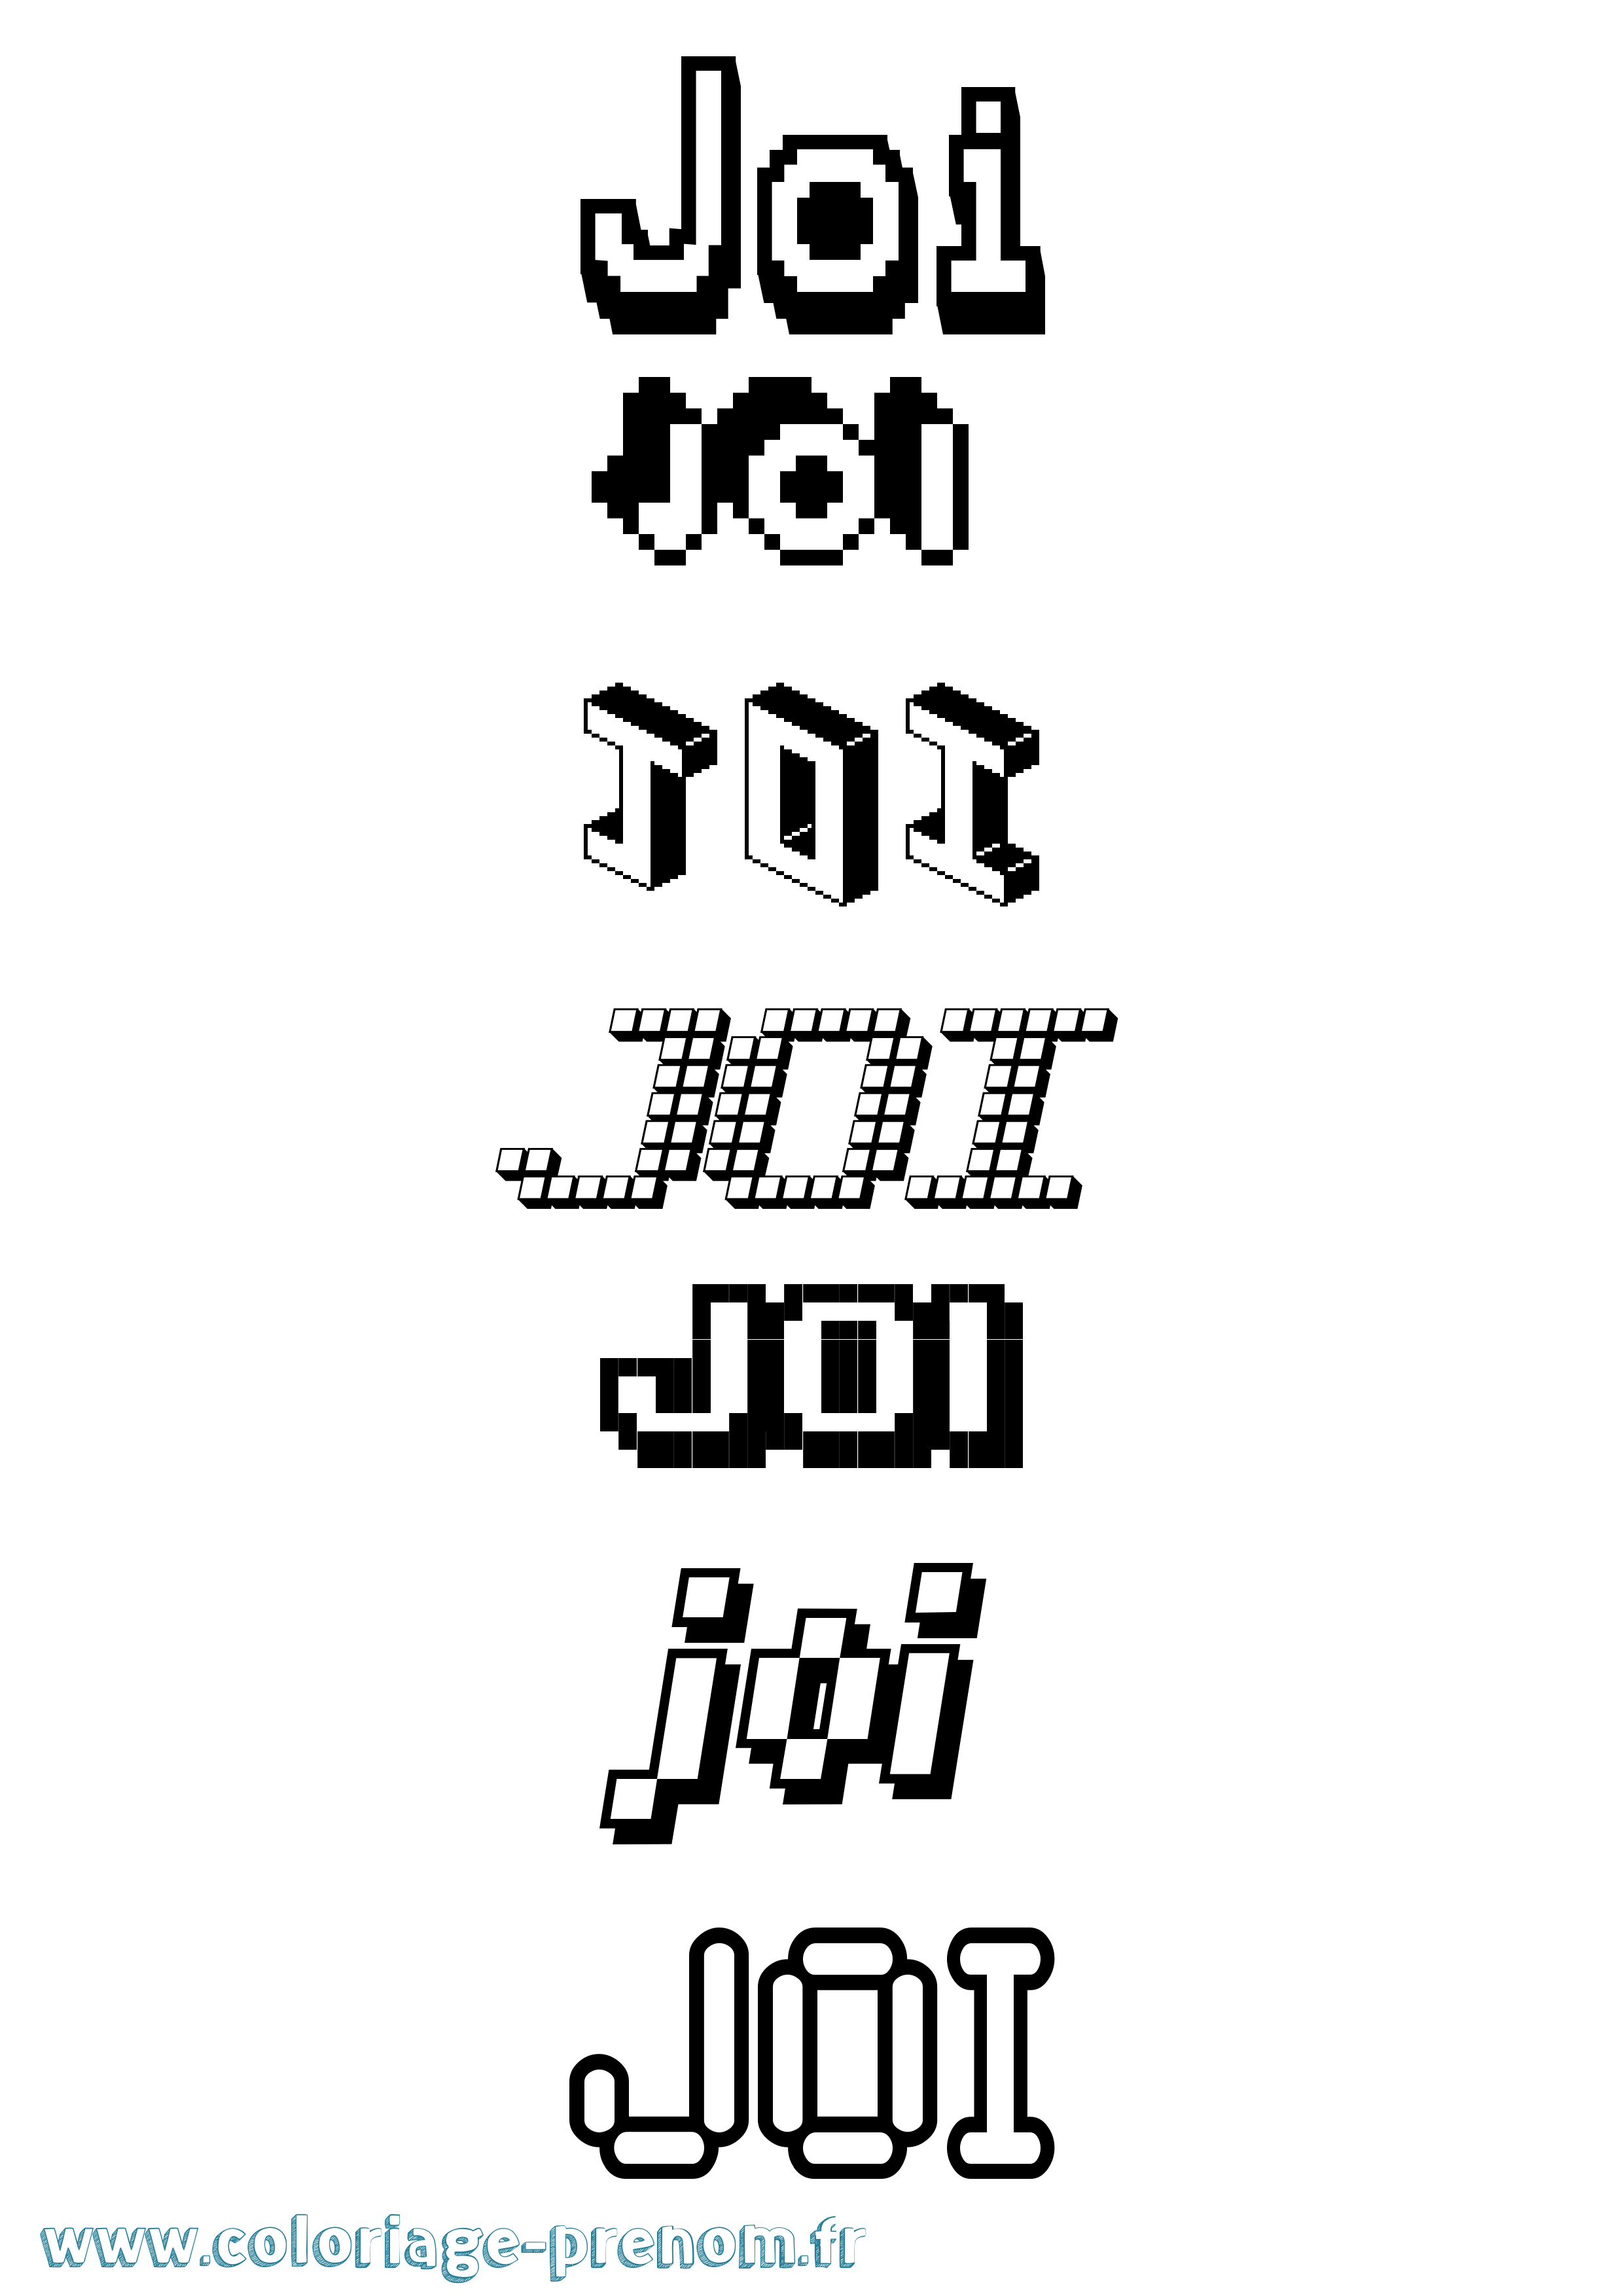 Coloriage prénom Joi Pixel